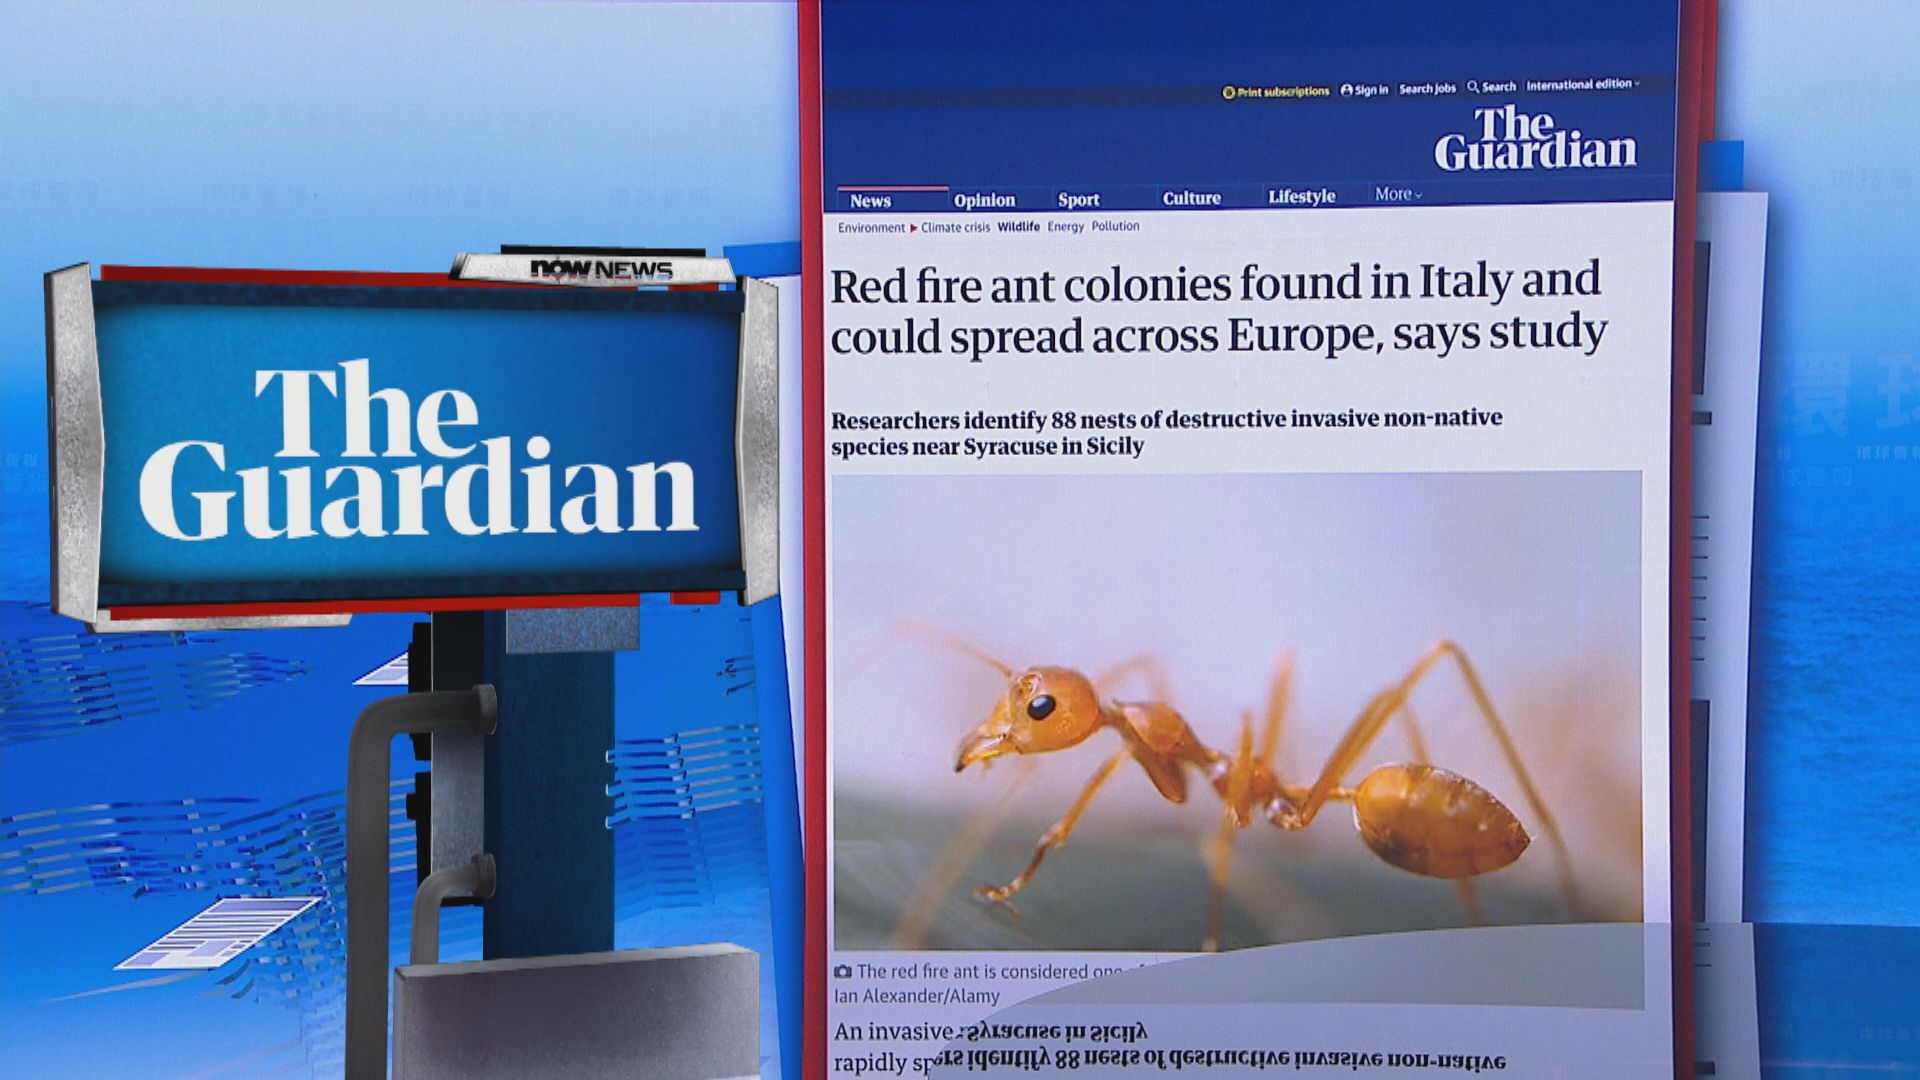 【環球薈報】歐洲野外首次發現紅火蟻群落 西西里島有88個蟻穴